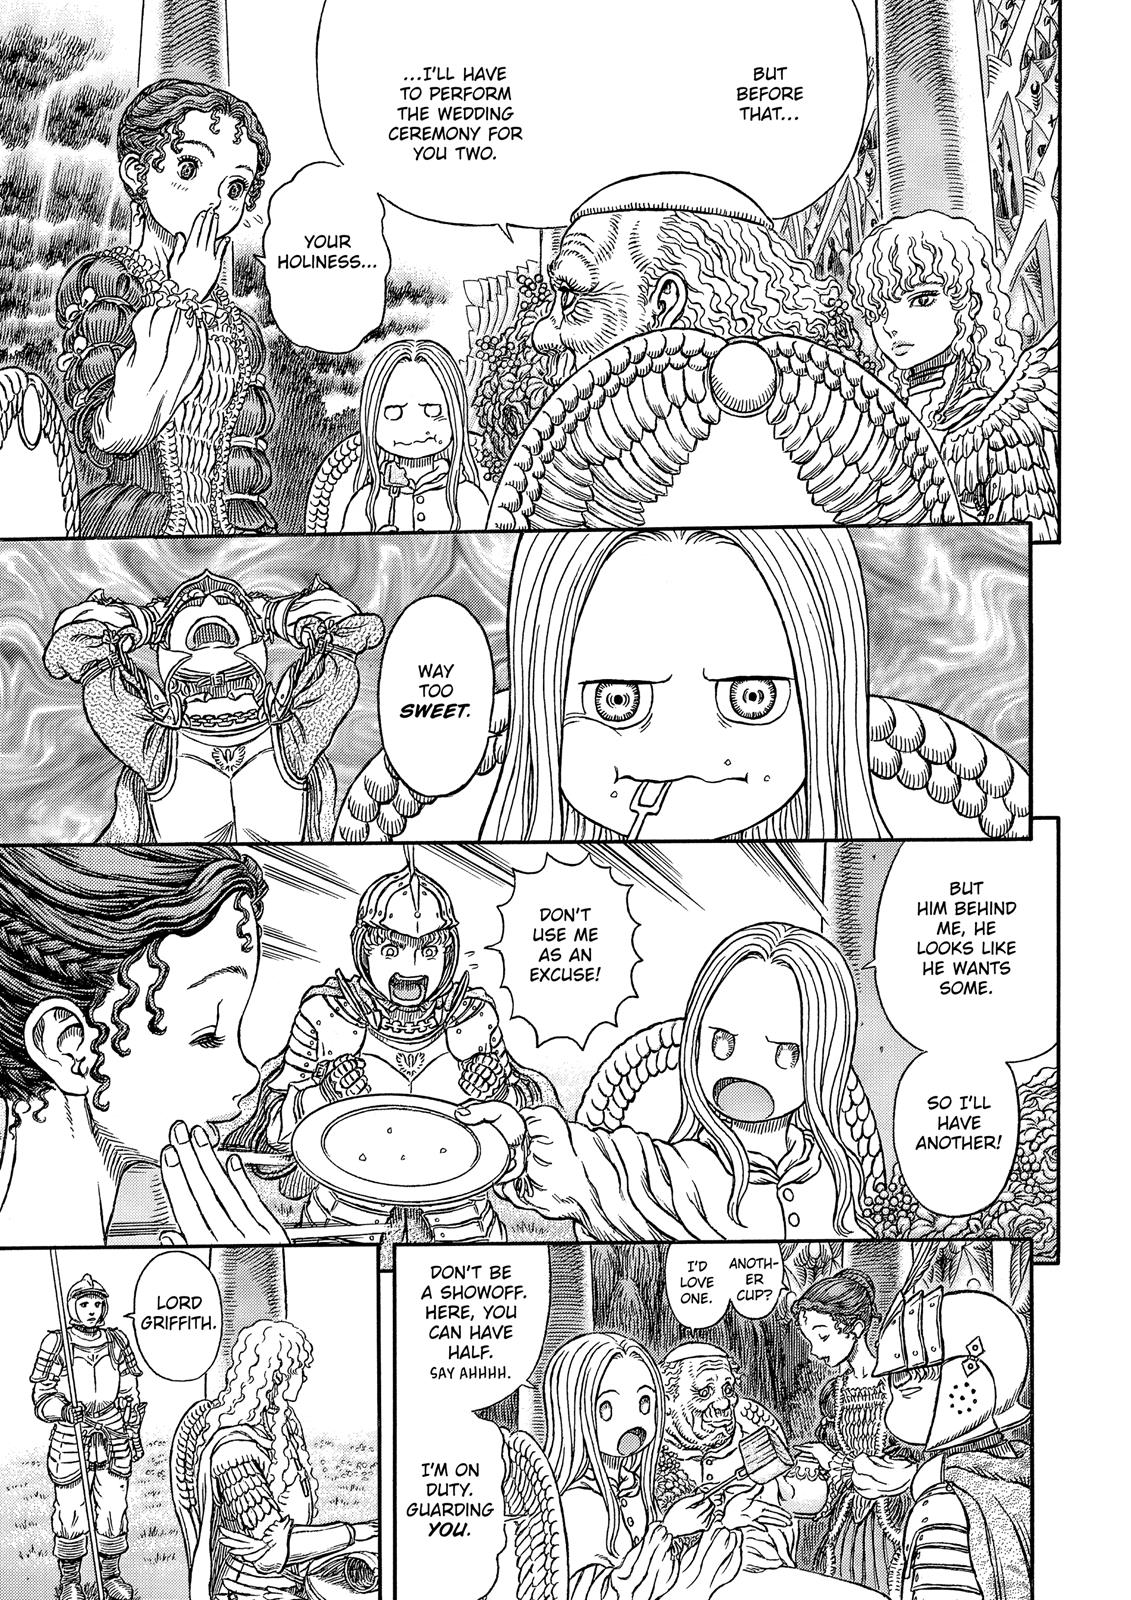 Berserk Manga Chapter 337 image 07